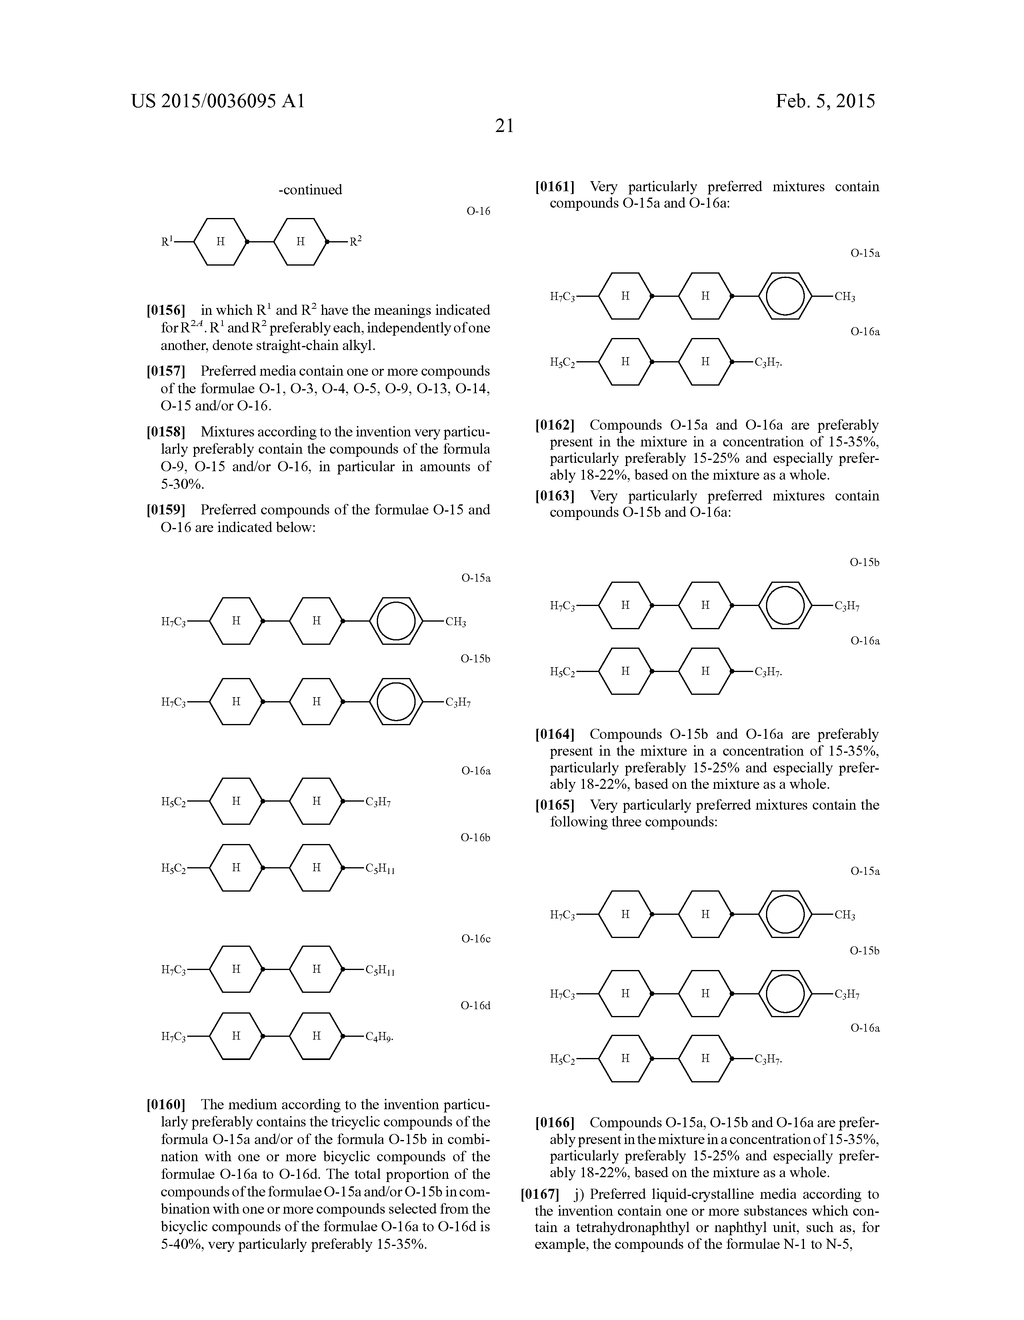 LIQUID CRYSTALLINE MEDIUM - diagram, schematic, and image 23